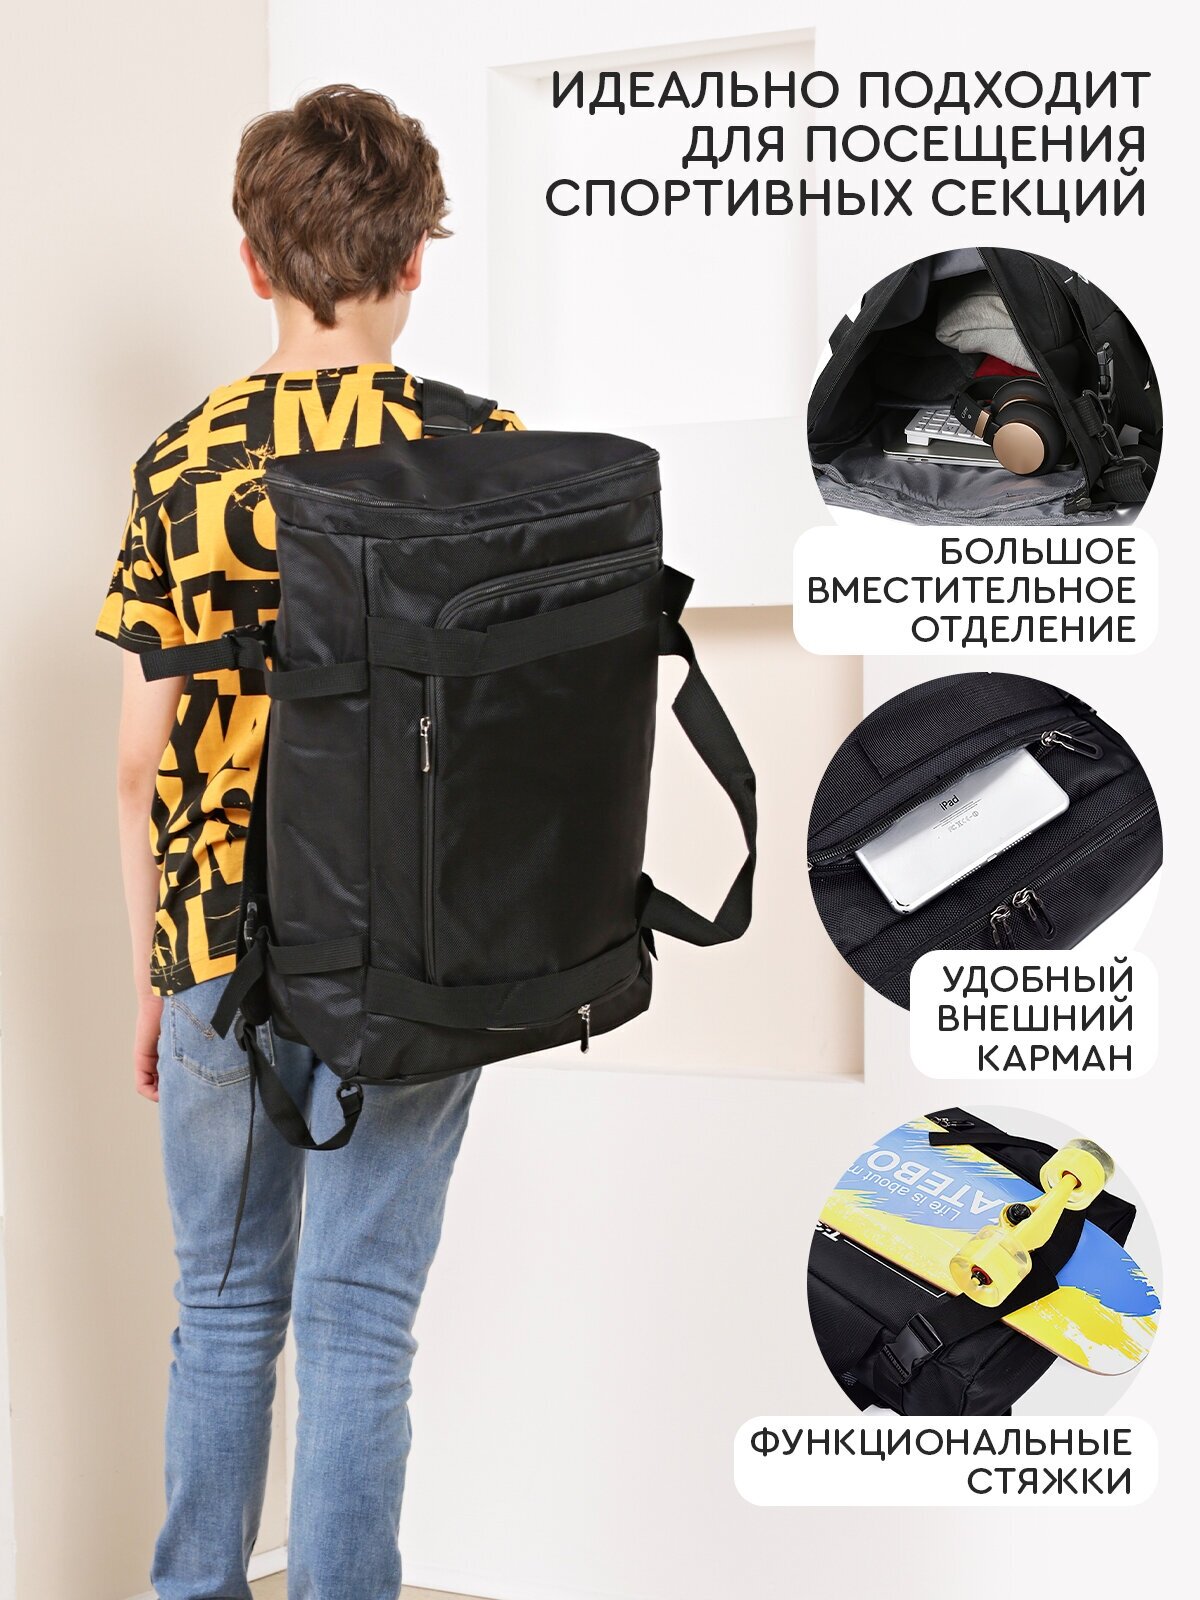 Рюкзак-спортивная сумка (22,5 л, черная) UrbanStorm трансформер большой размер для фитнеса, отдыха \ школьный для мальчиков, девочек - фотография № 3